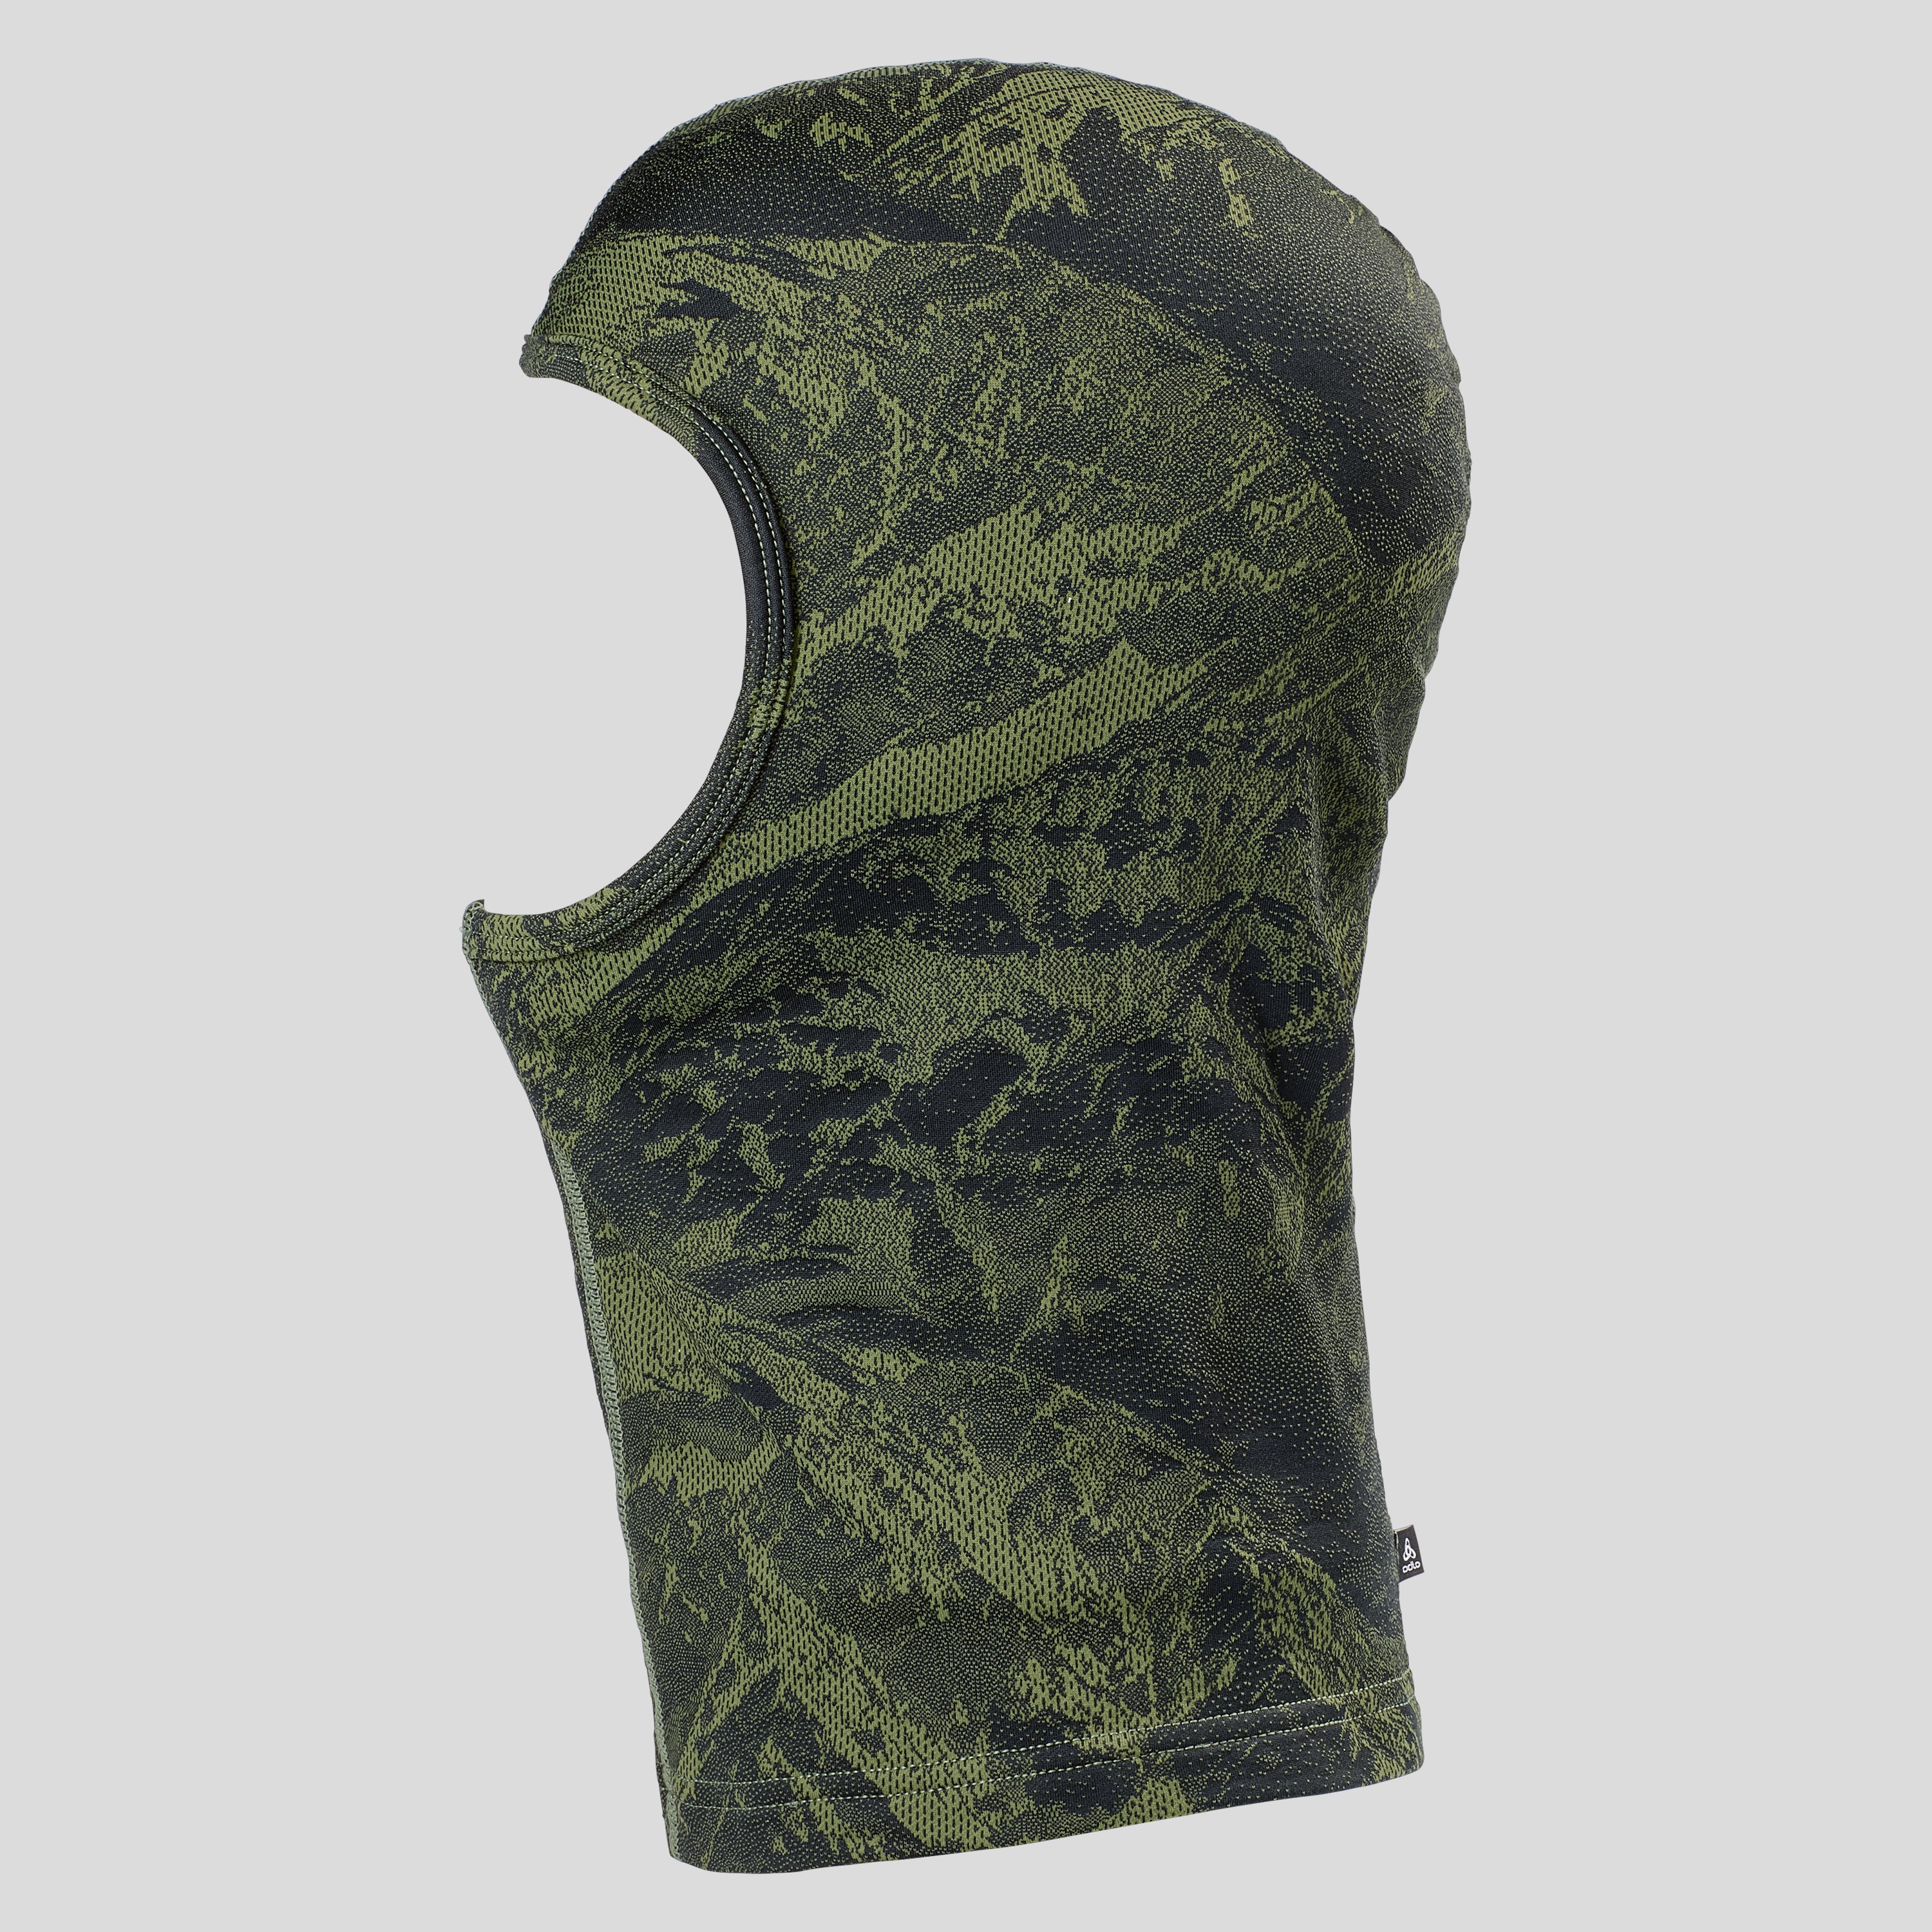 ODLO Whistler Maske mit Bergprint, L/XL, grün